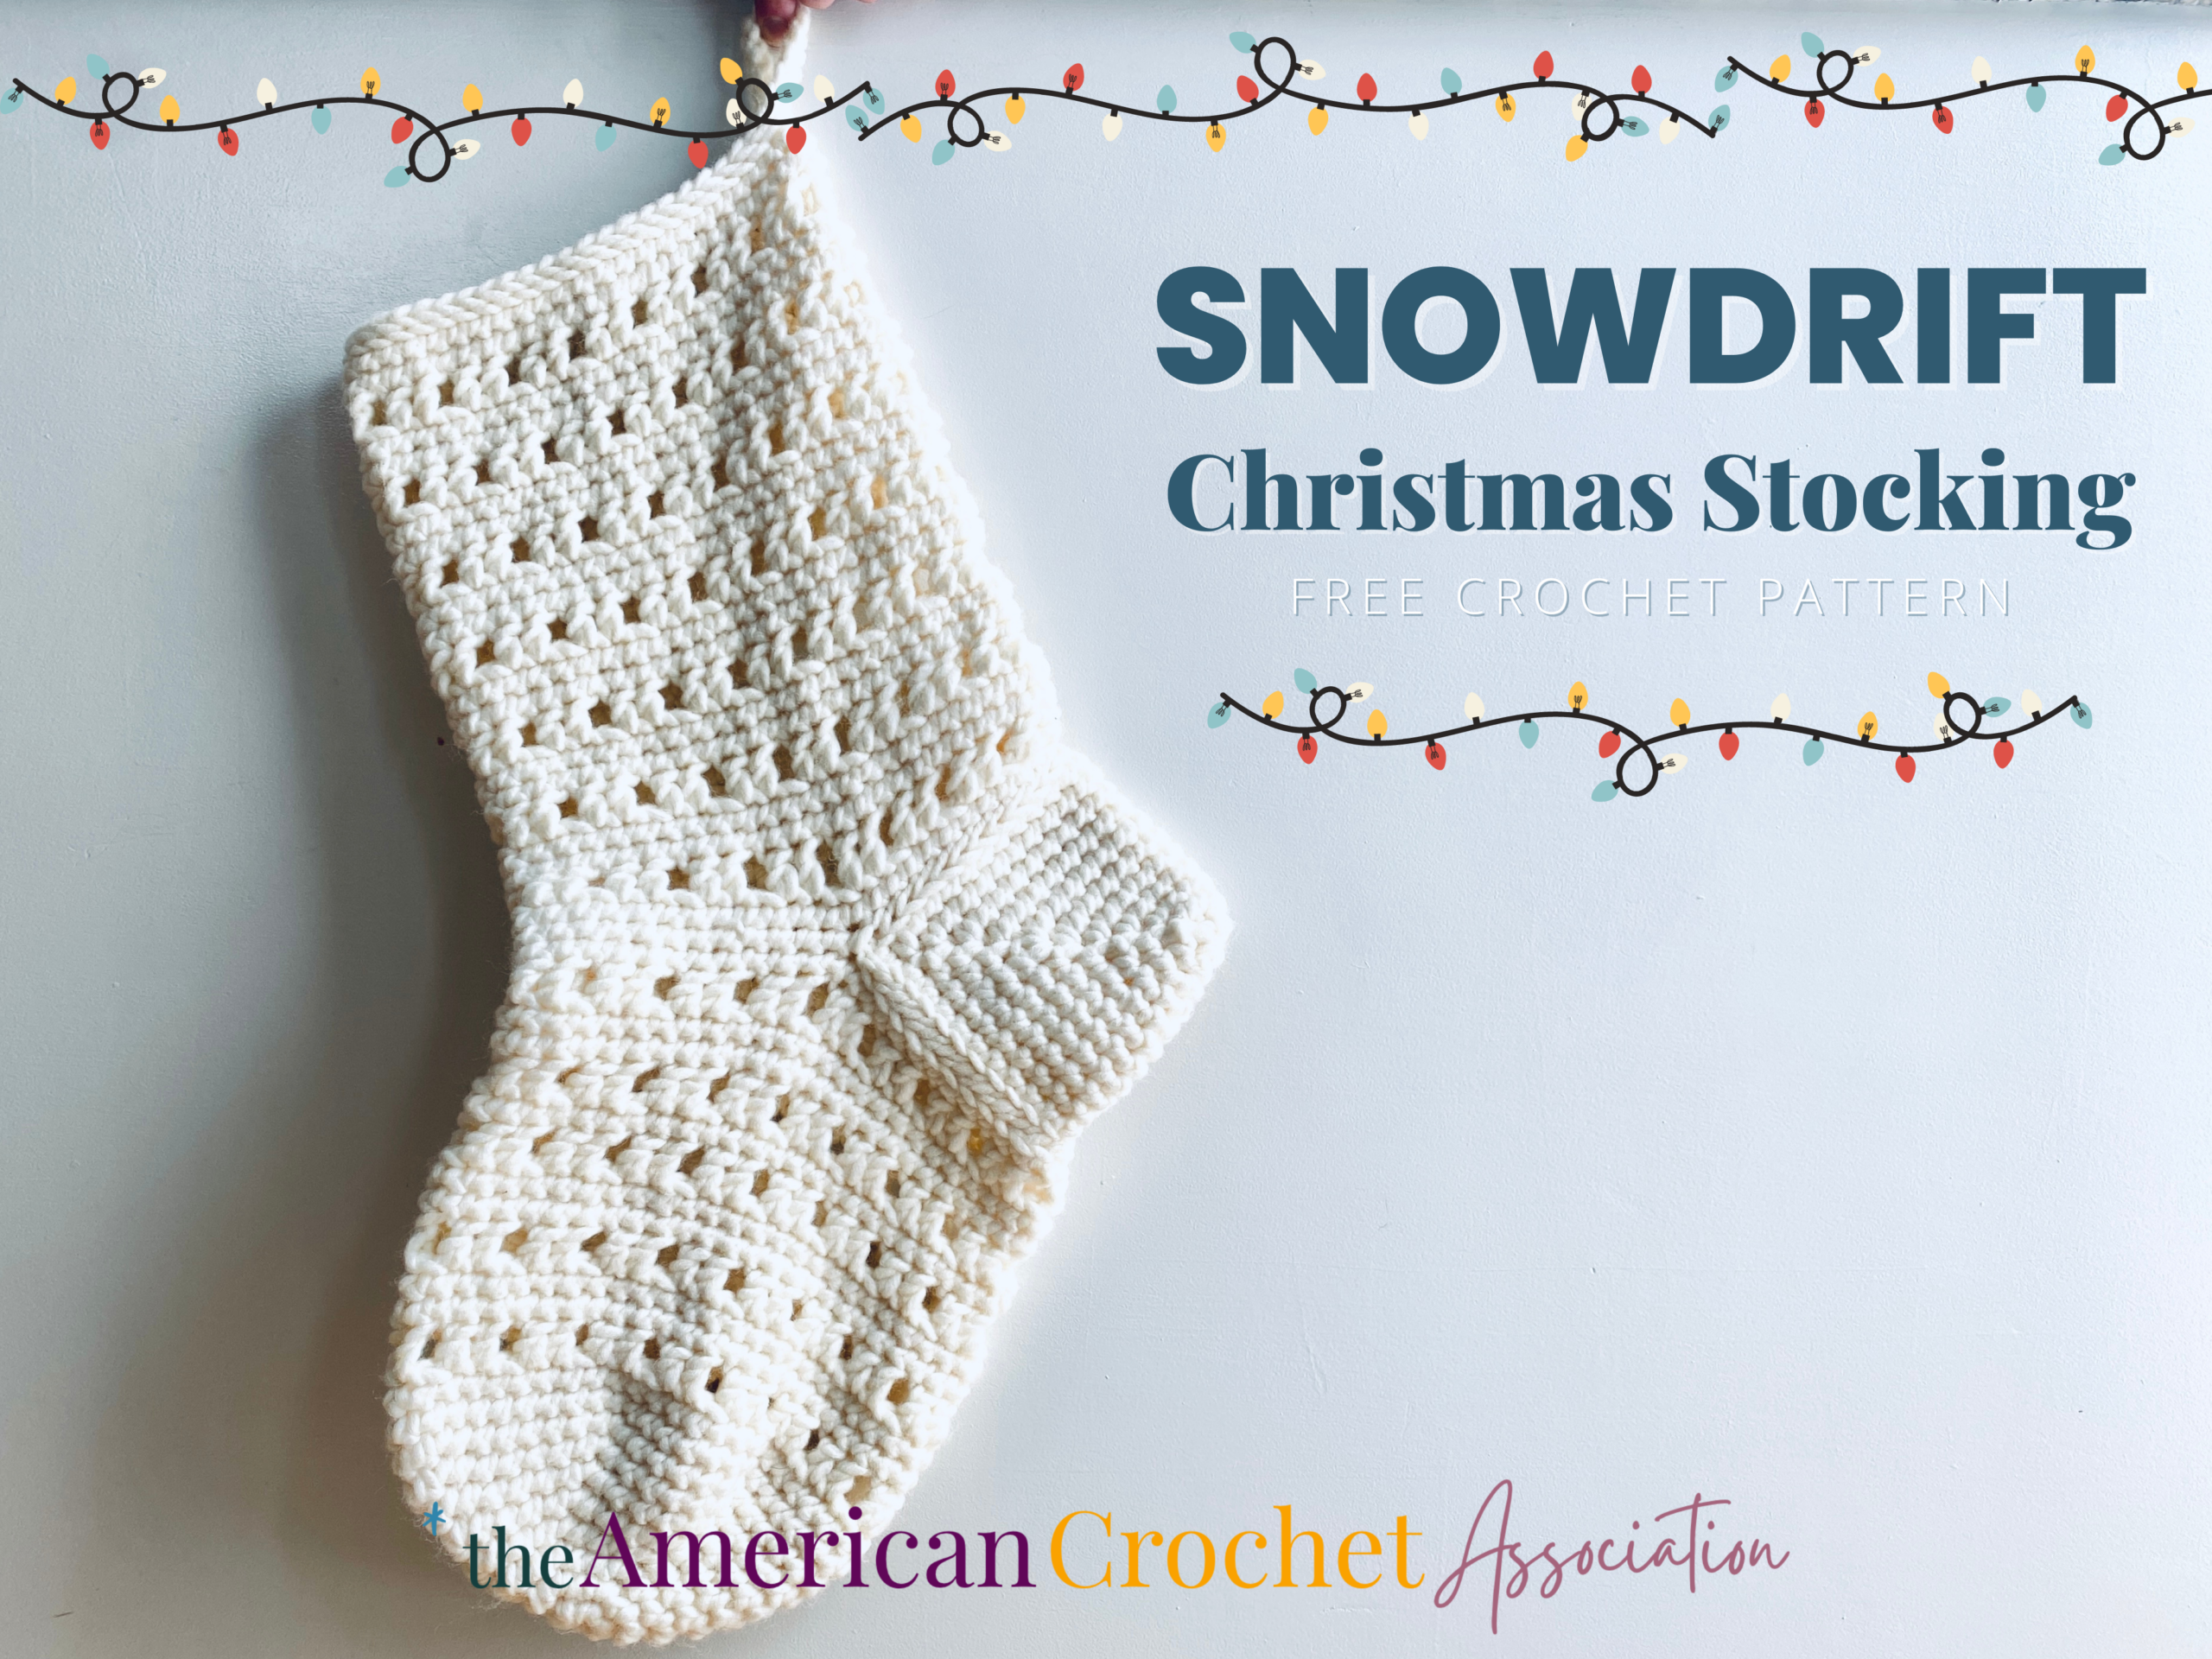 White crochet stocking against white background